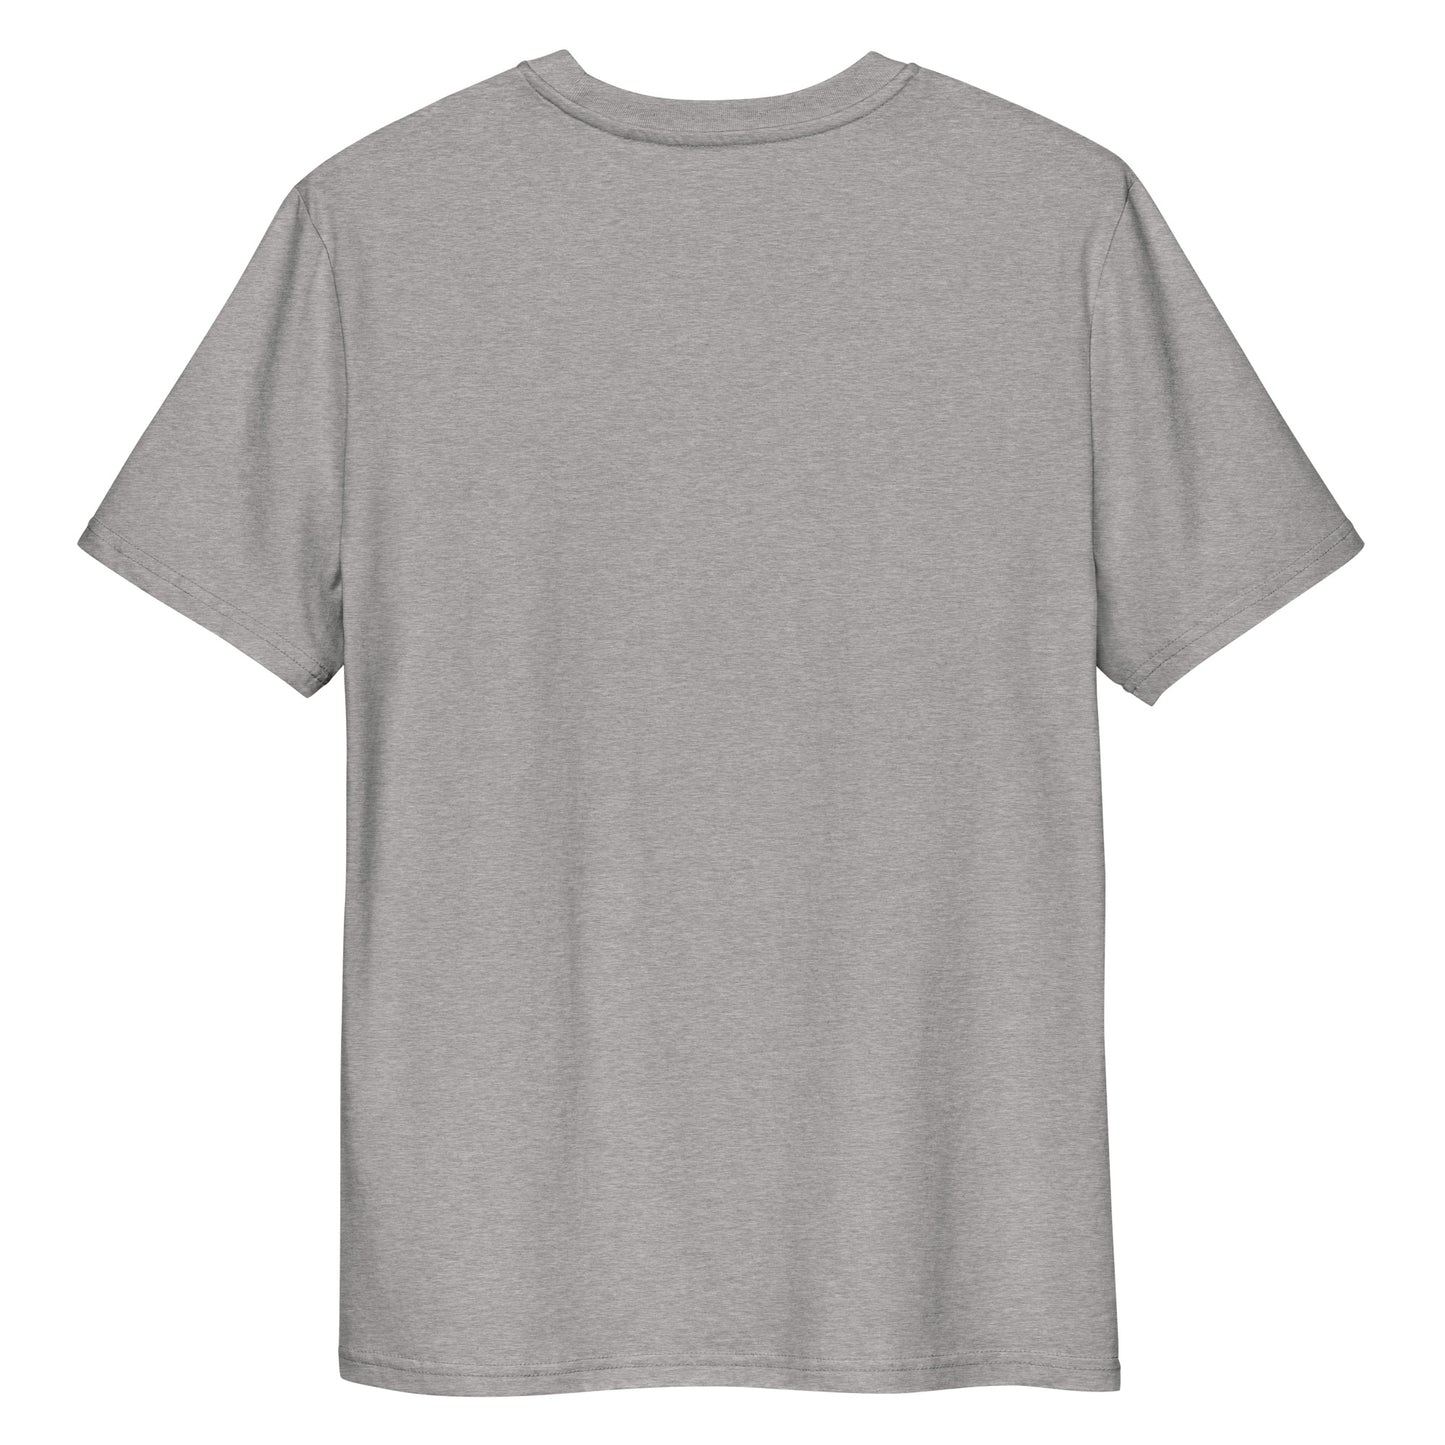 Camiseta gris Mono Sound